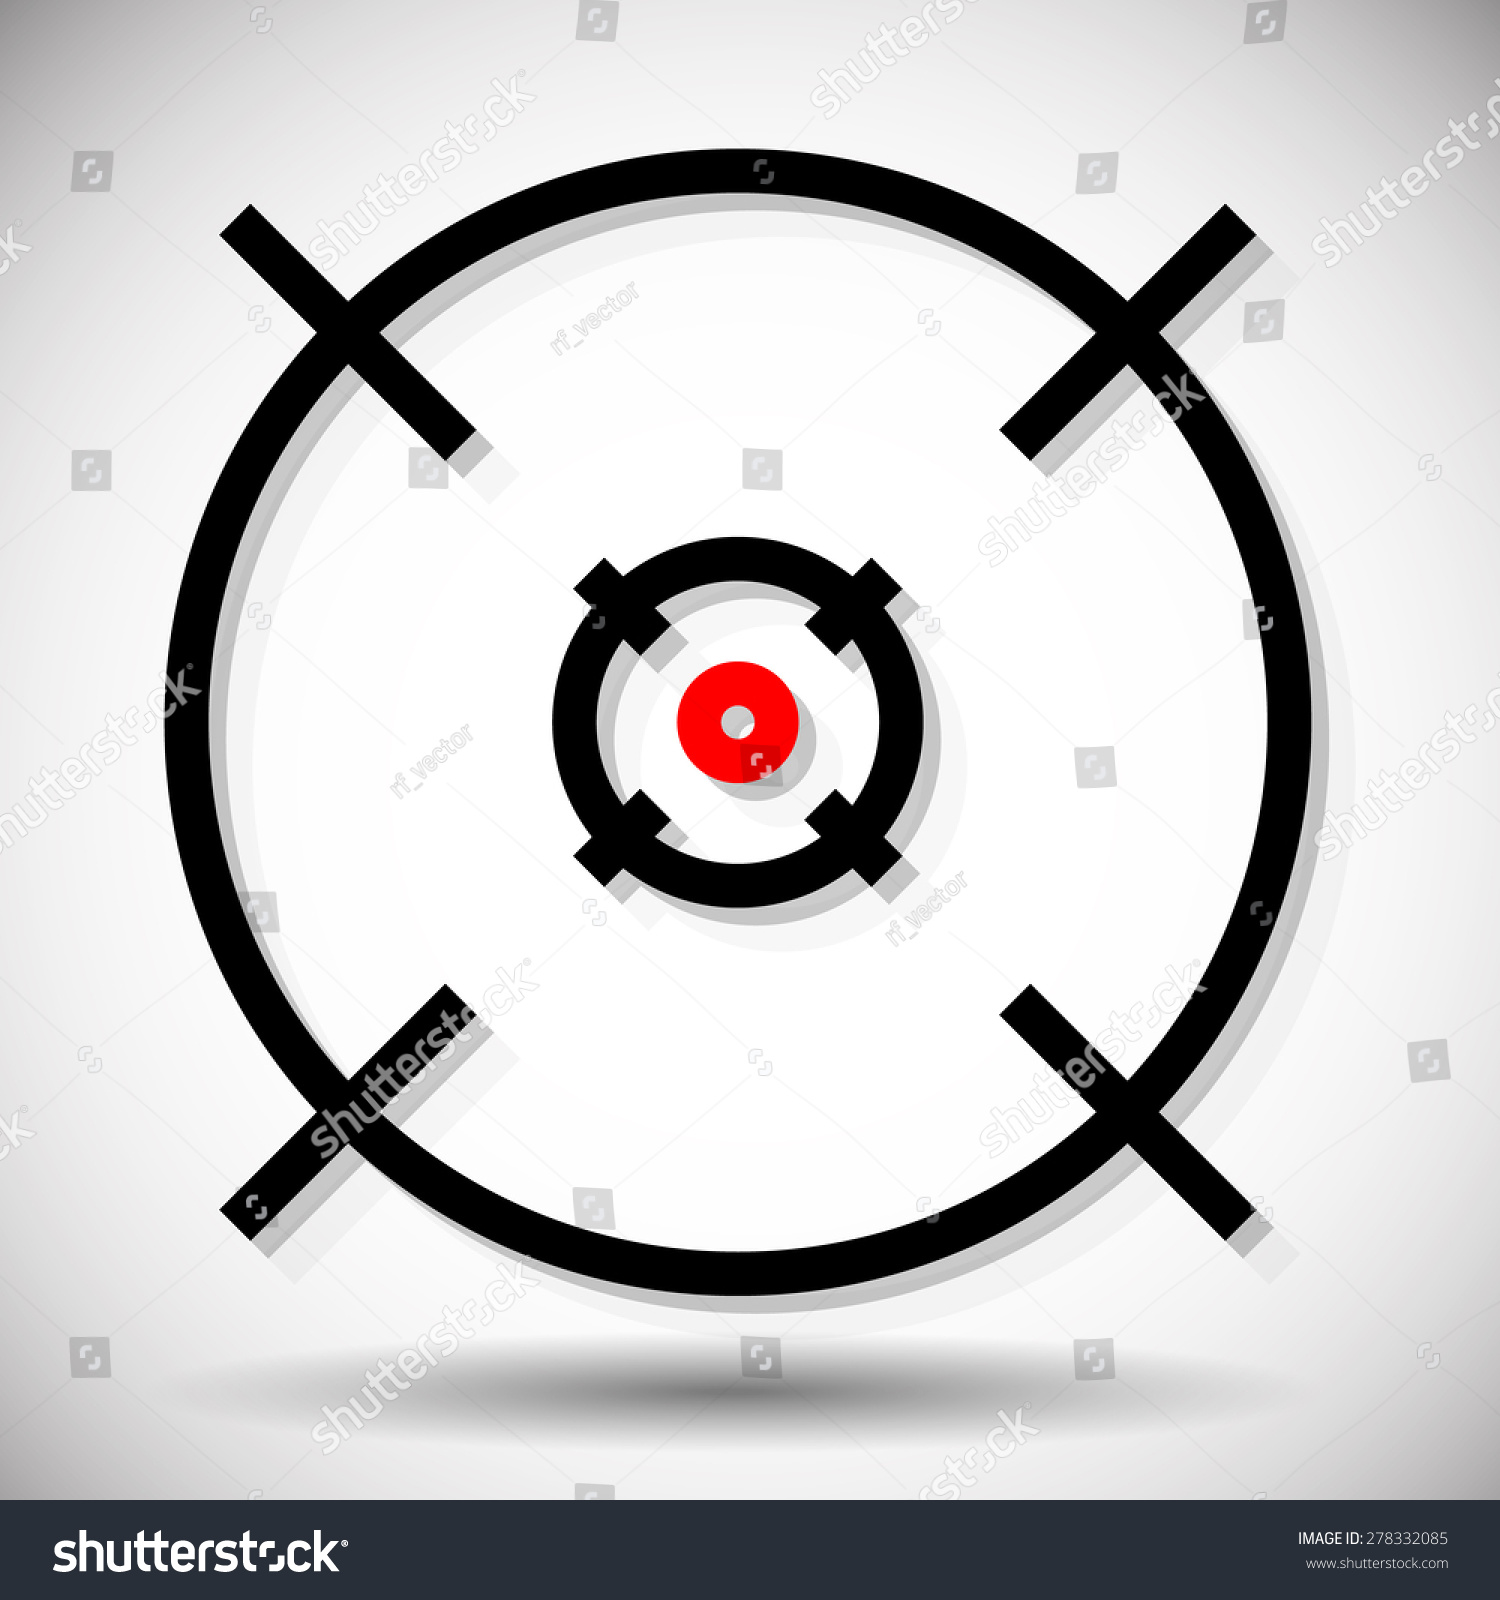 十字丝,火器的十字线图形与红点,向量。精度、